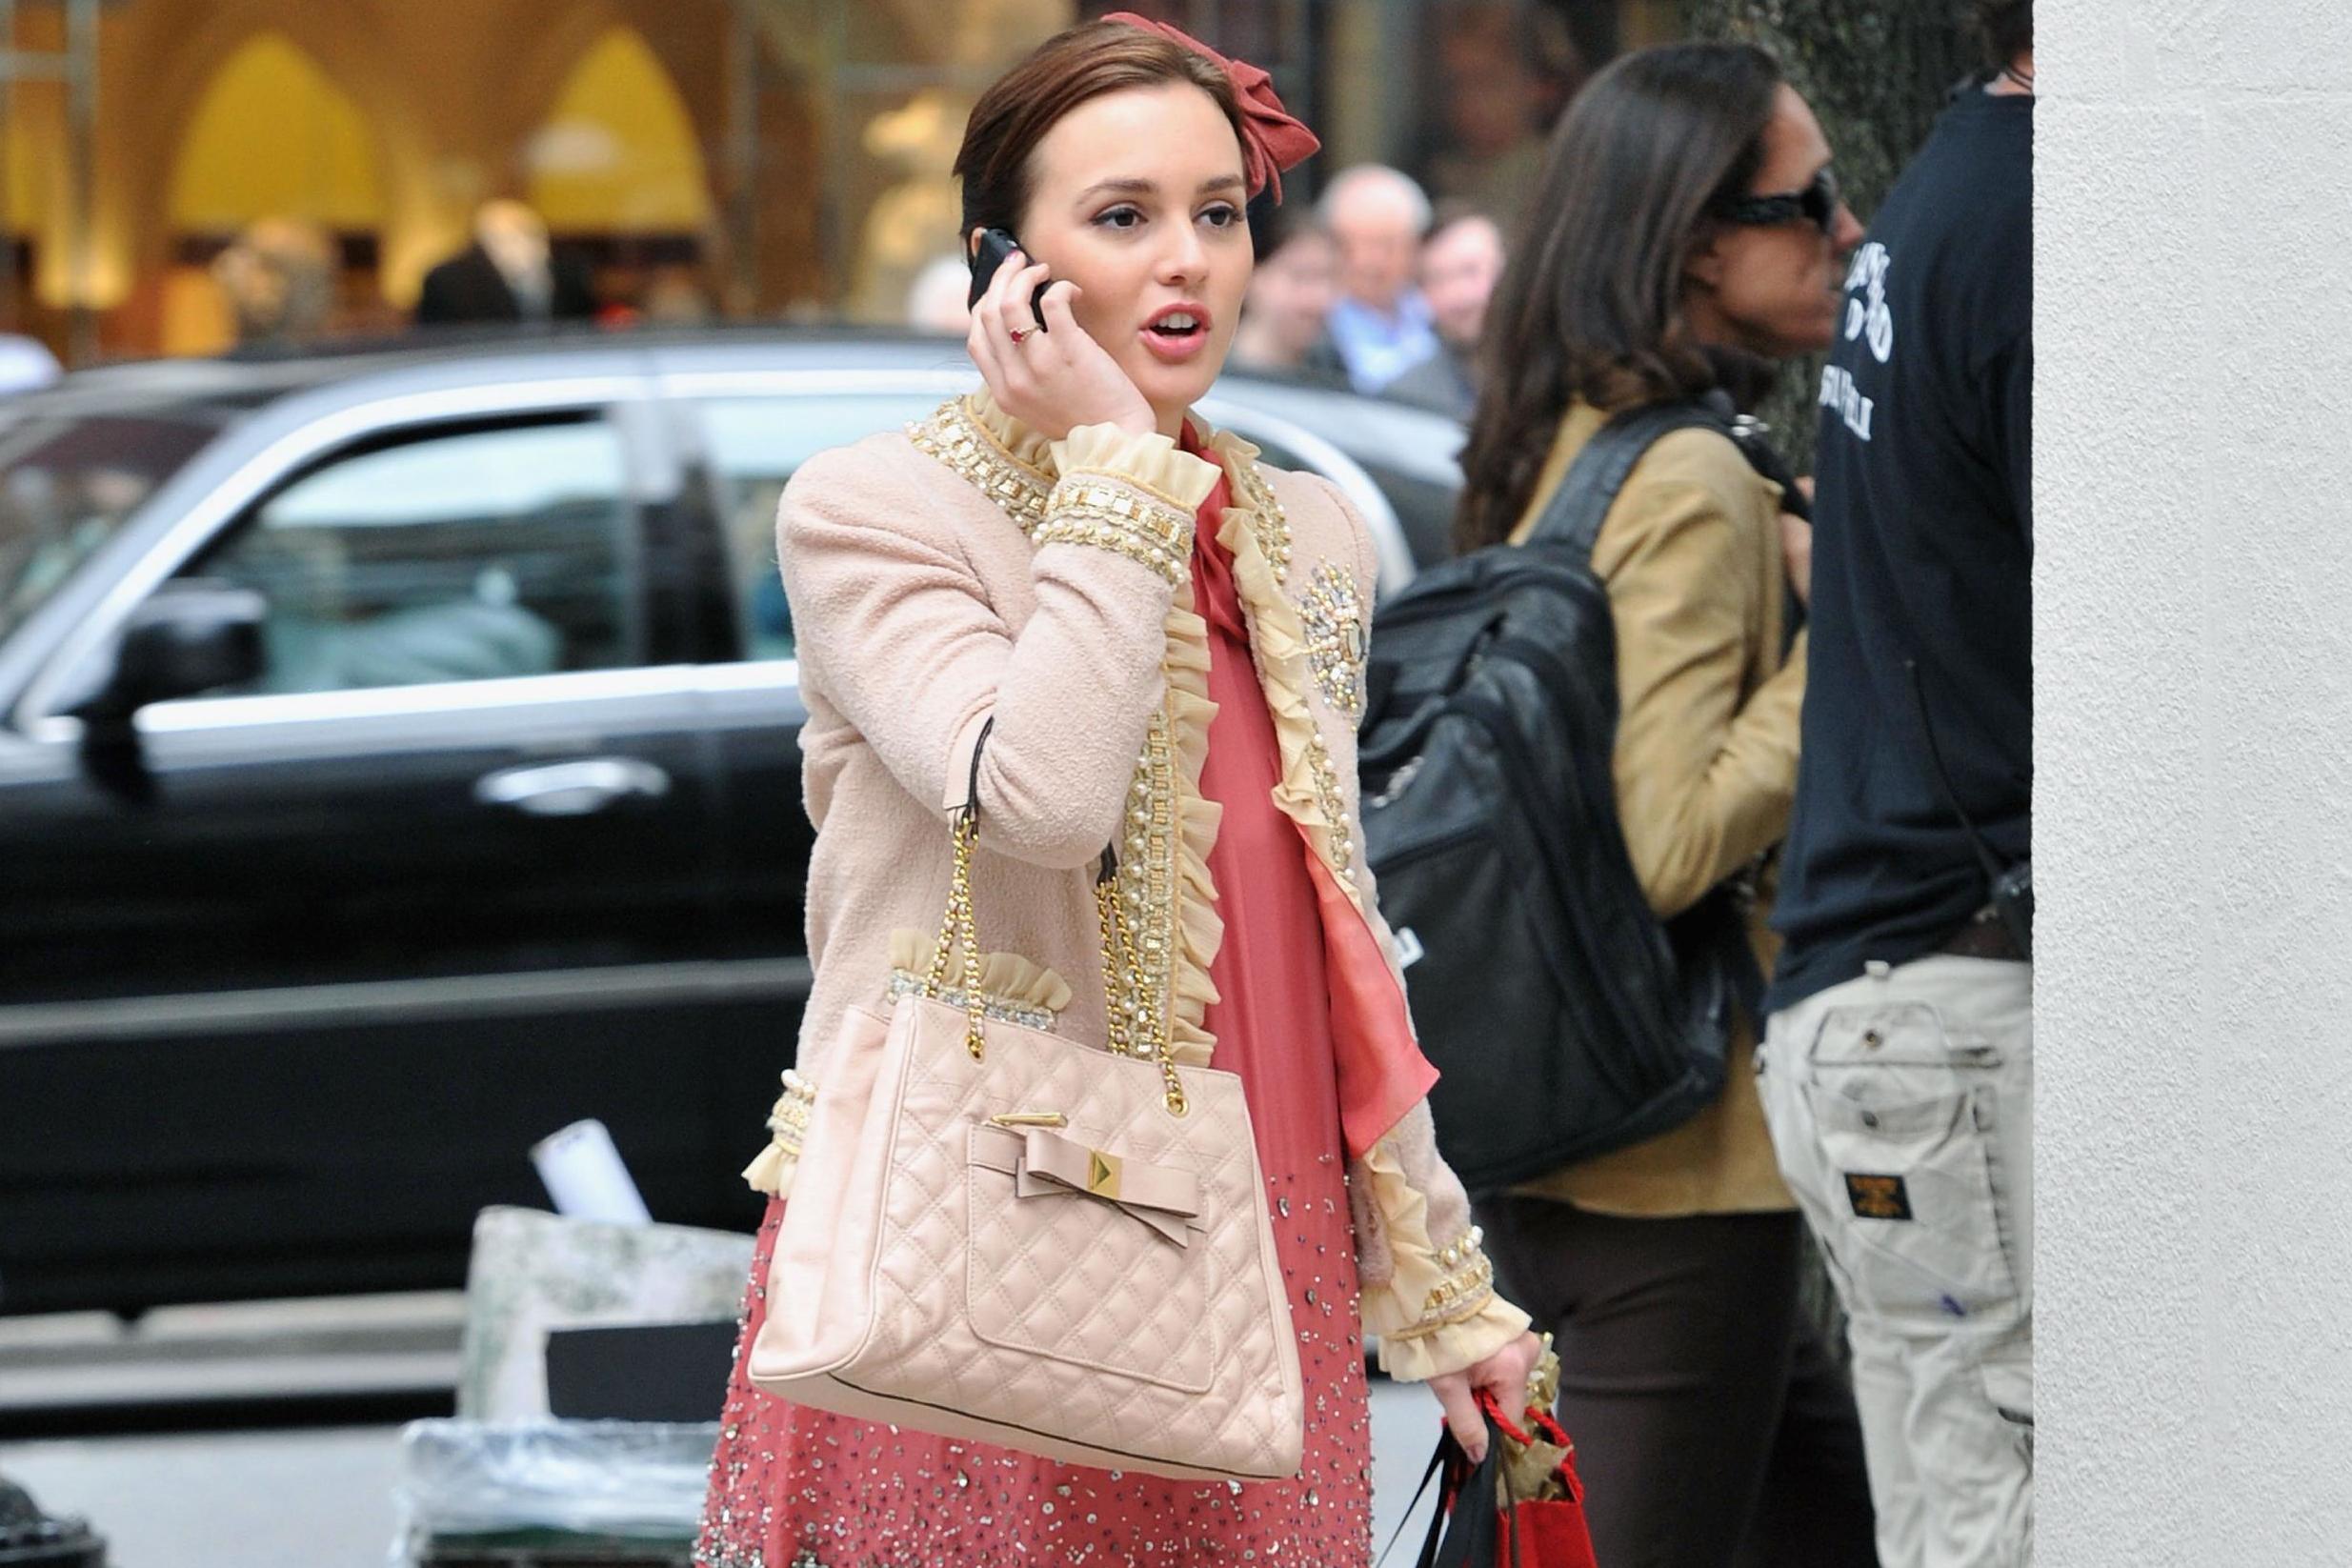 Leighton Meester on the set of Gossip Girl on 16 September, 2011 in New York City.